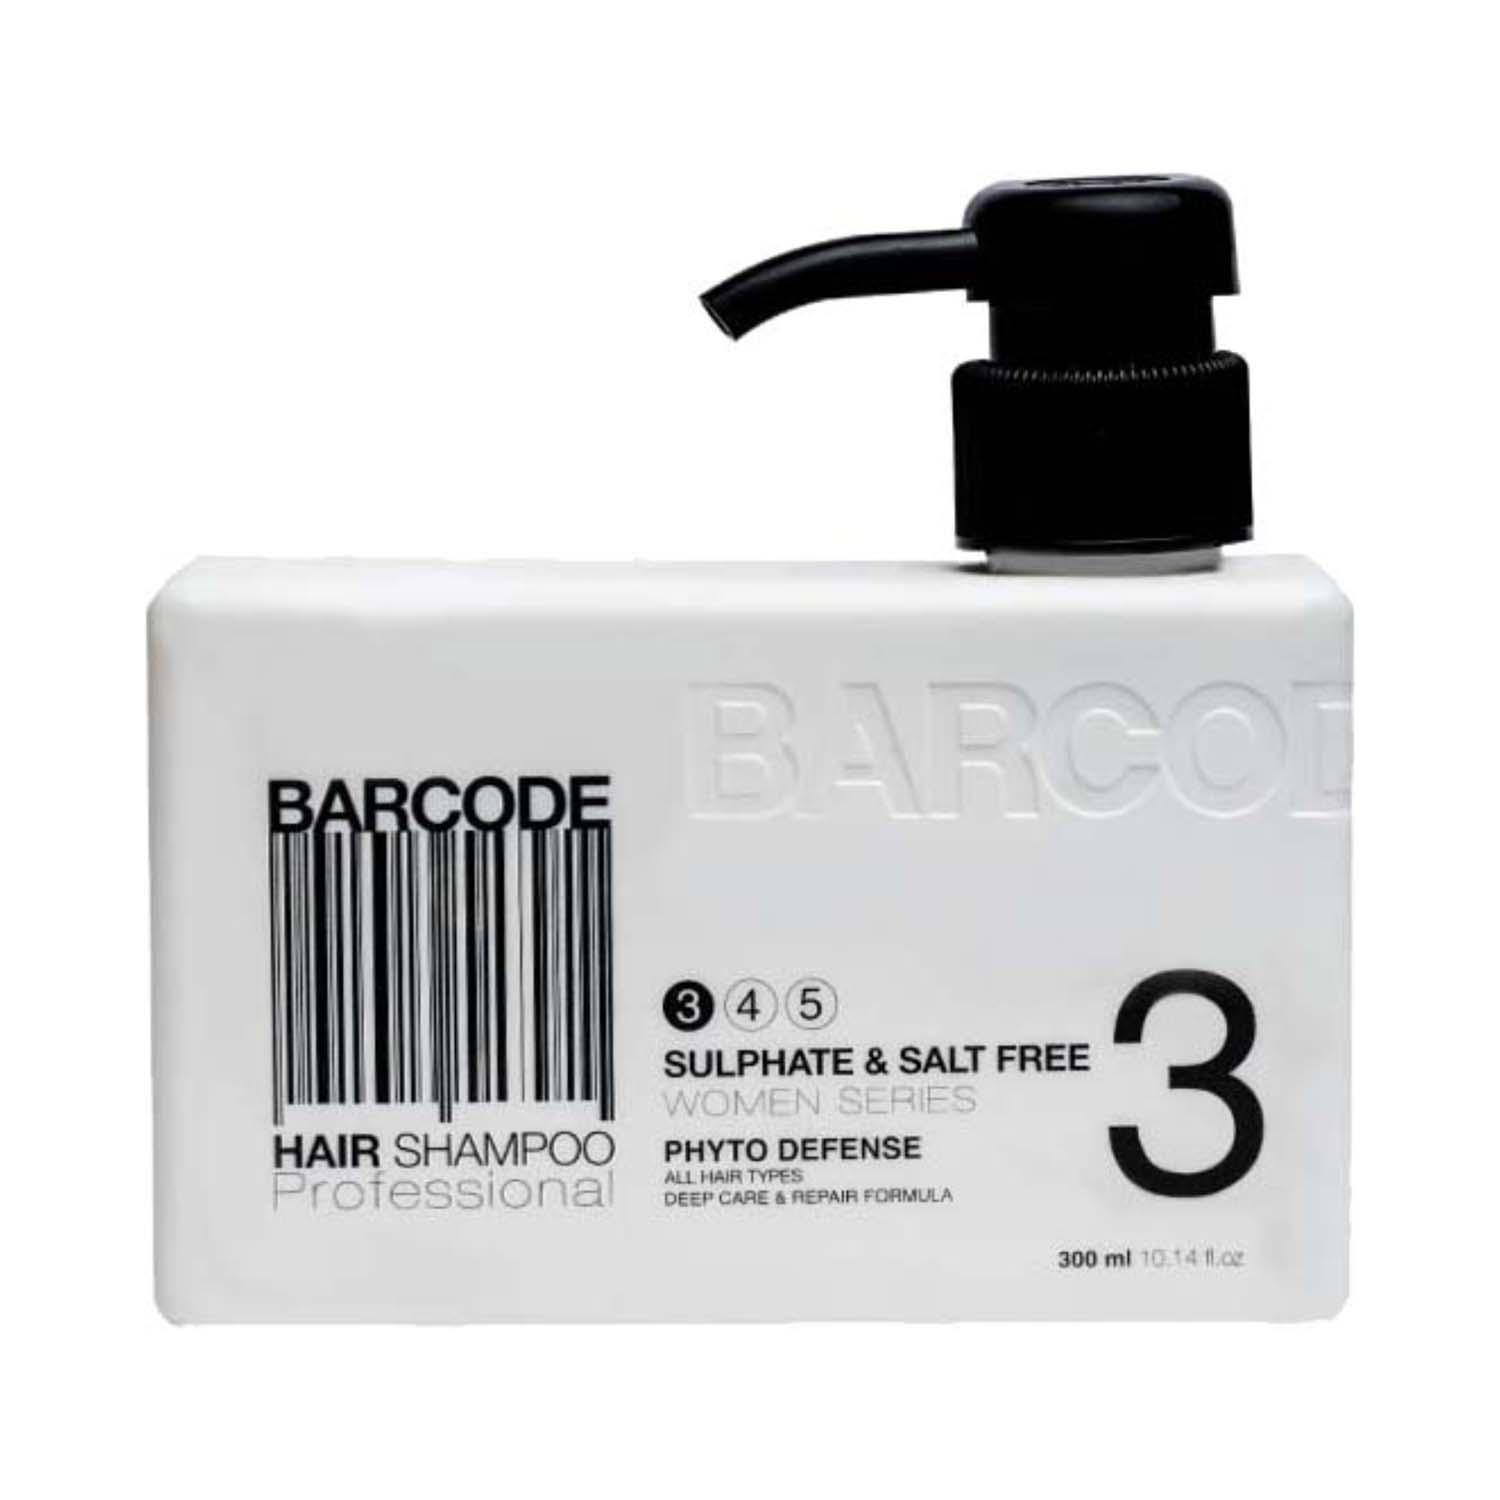 Barcode Professional | Barcode Professional Sulfate & Salt Free Hair Shampoo - BCSH001 (300 ml)